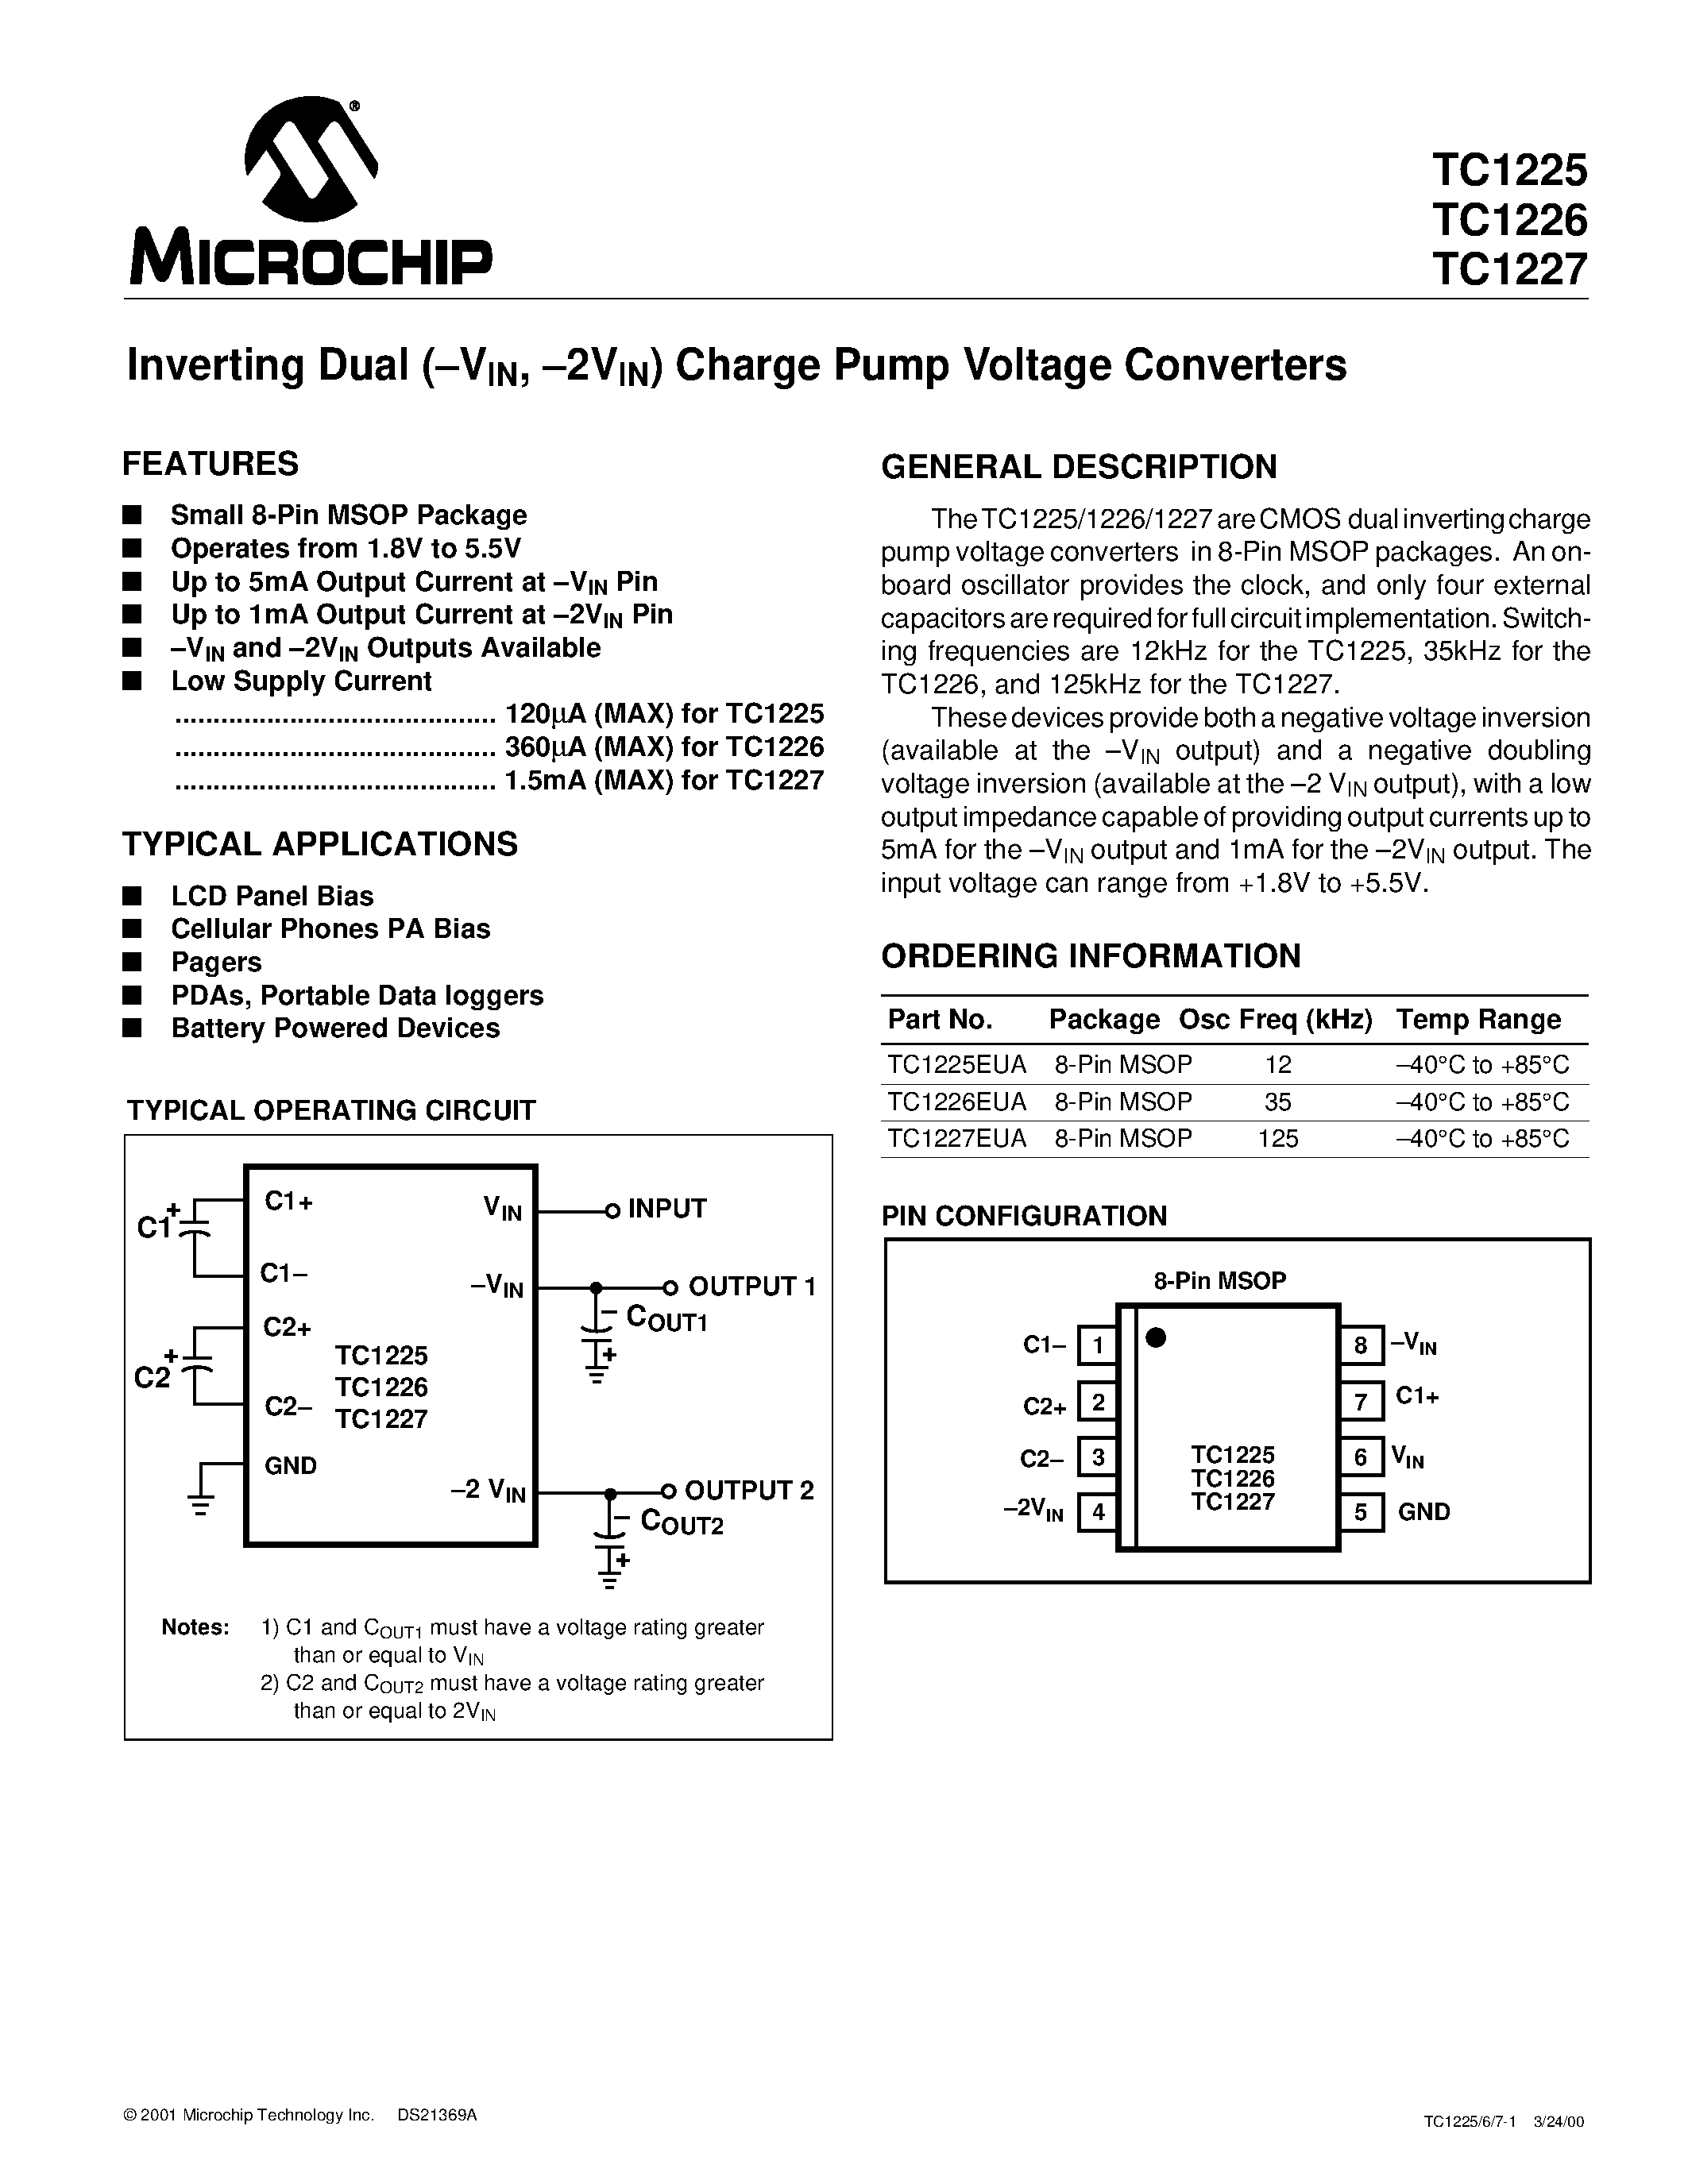 Даташит TC1225 - (TC1225 / TC1226 / TC1227) Inverting Dual Charge Pump Voltage Converters страница 1